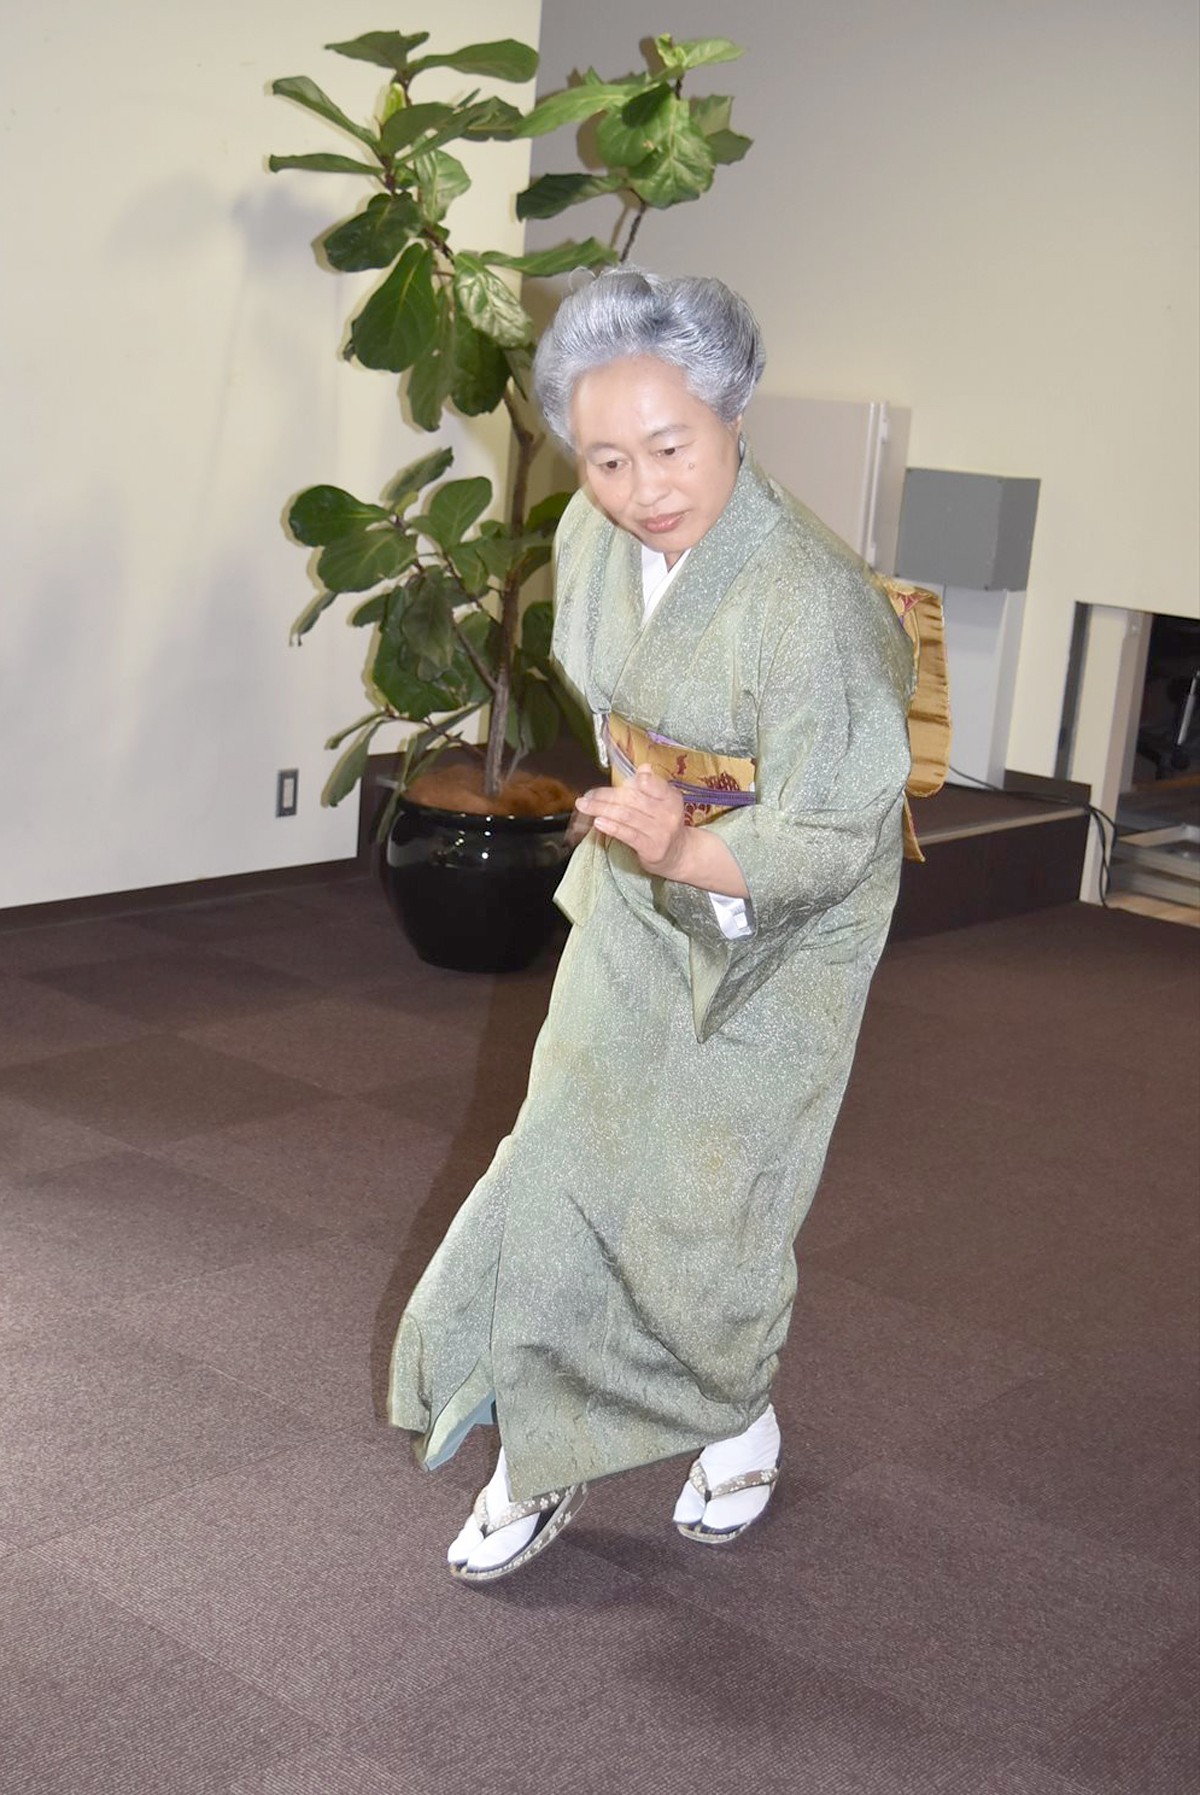 ブルーノ・マーズ絶賛のおばあちゃんダンサー、着物でキレッキレの「お米ダンス」披露